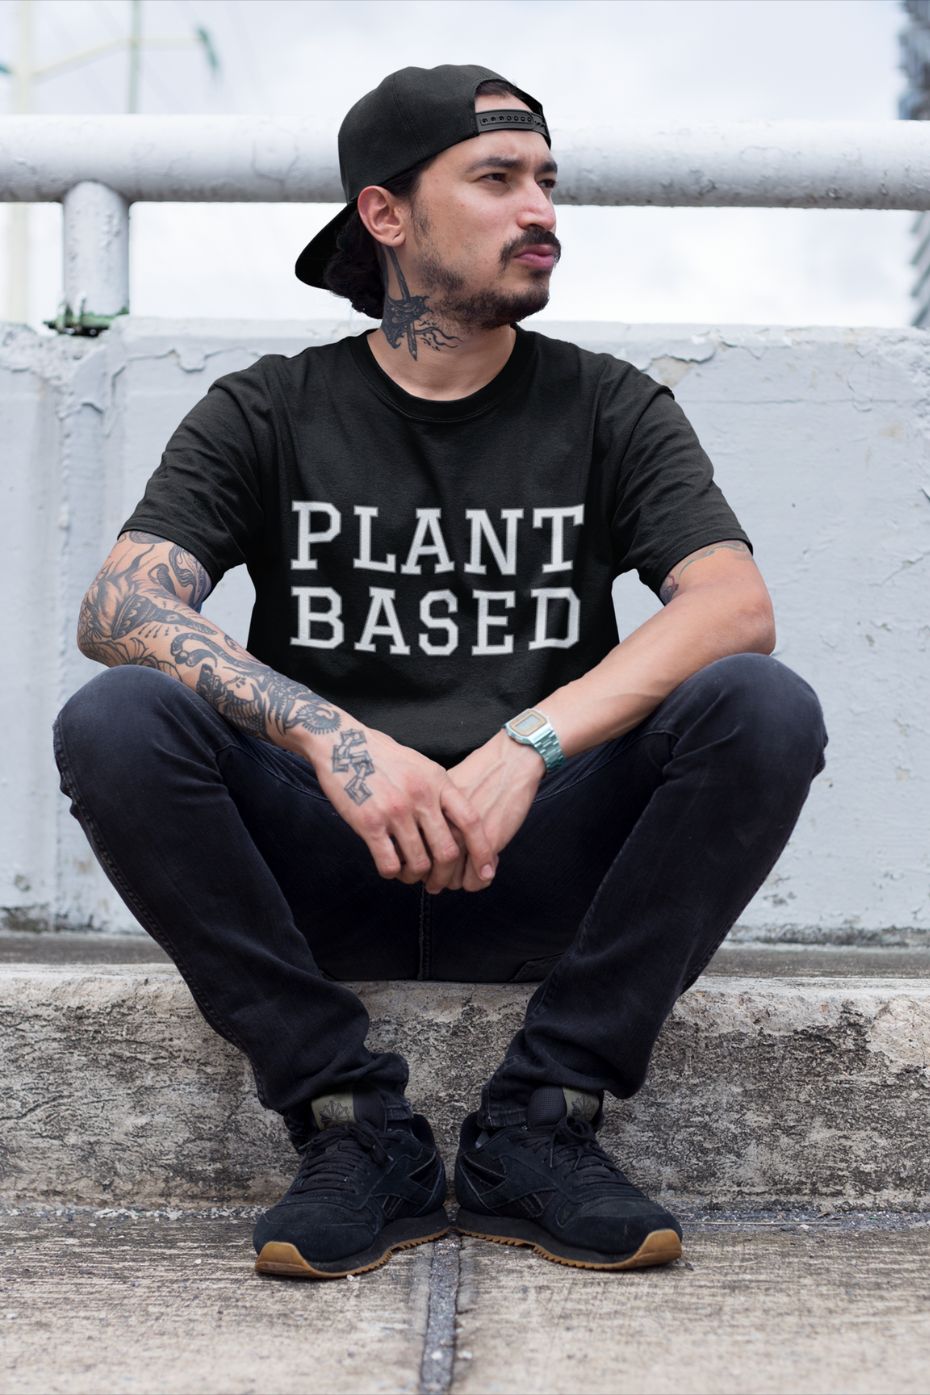 Plant Based - Unisex t-shirt